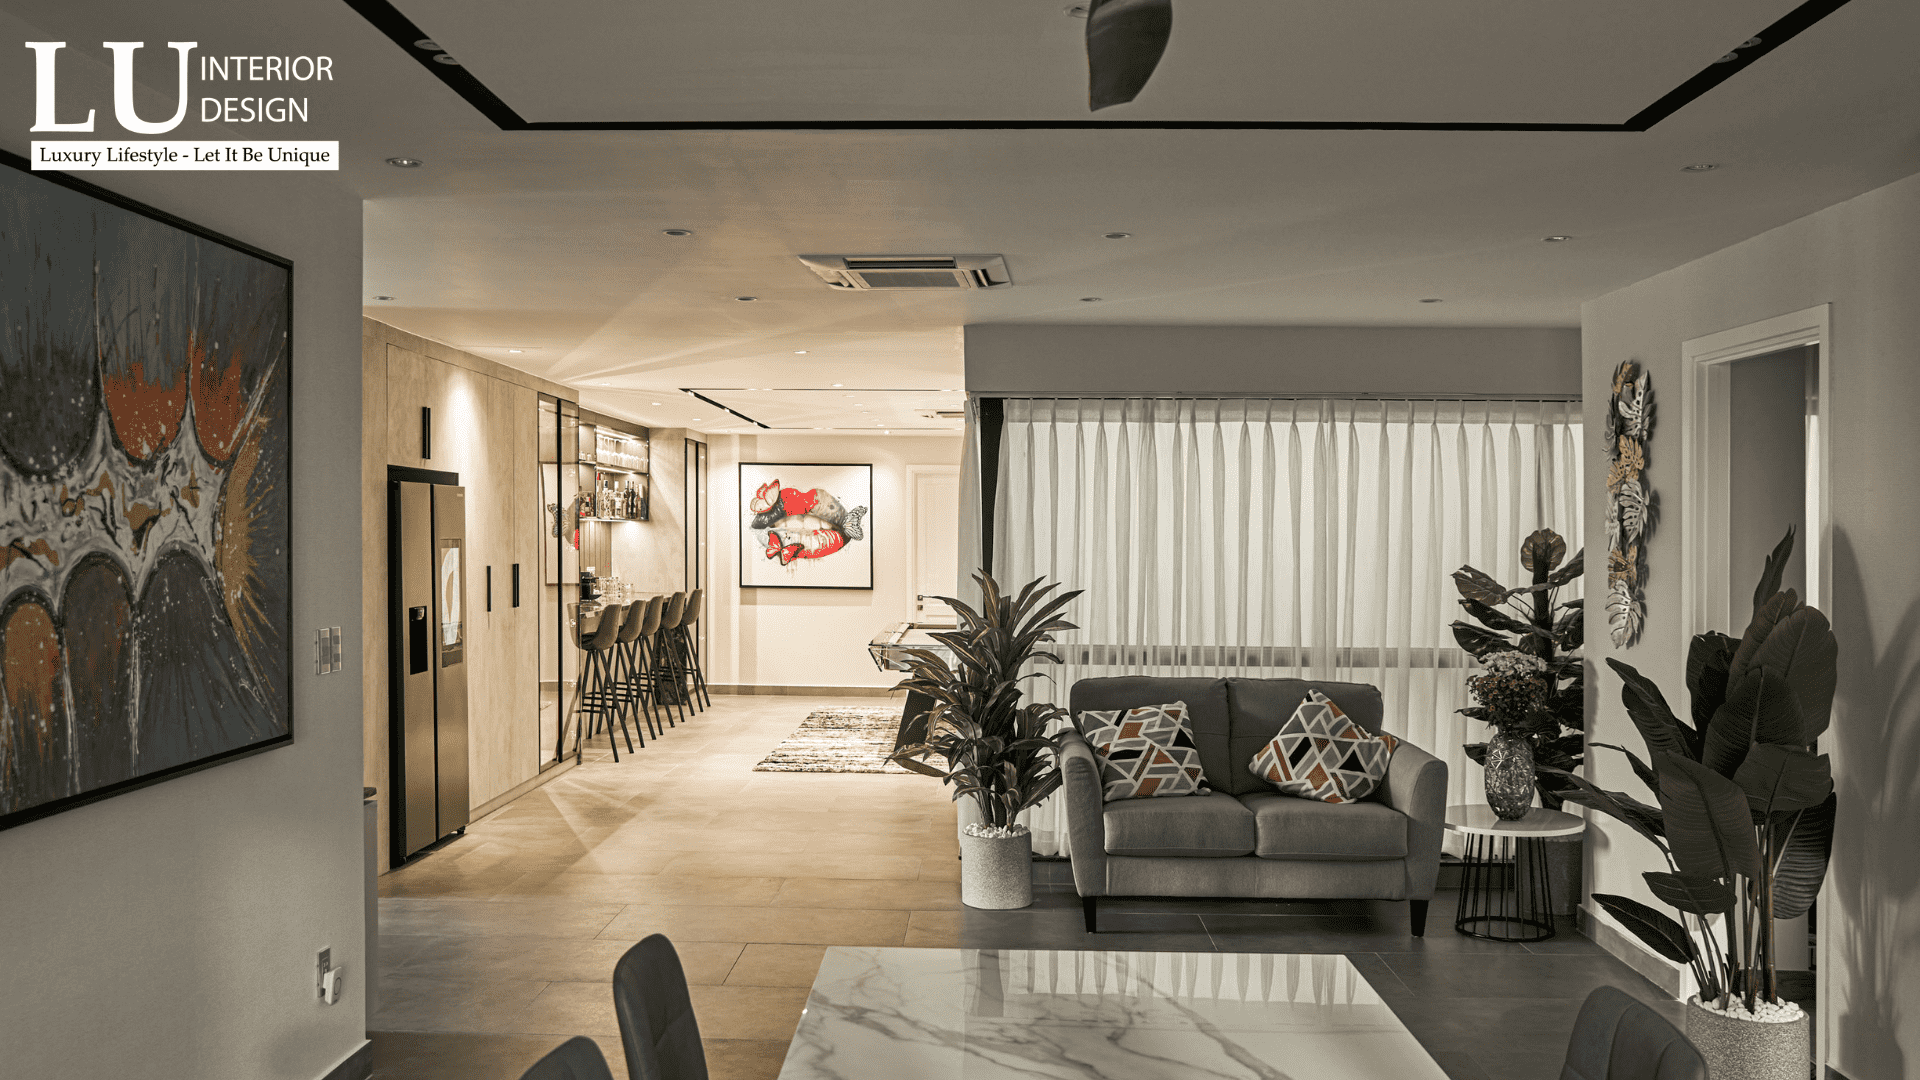 Hãy đảm bảo yếu tố hiện đại khi bố trí ánh sáng trong thiết kế nội thất penthouse | LU Design